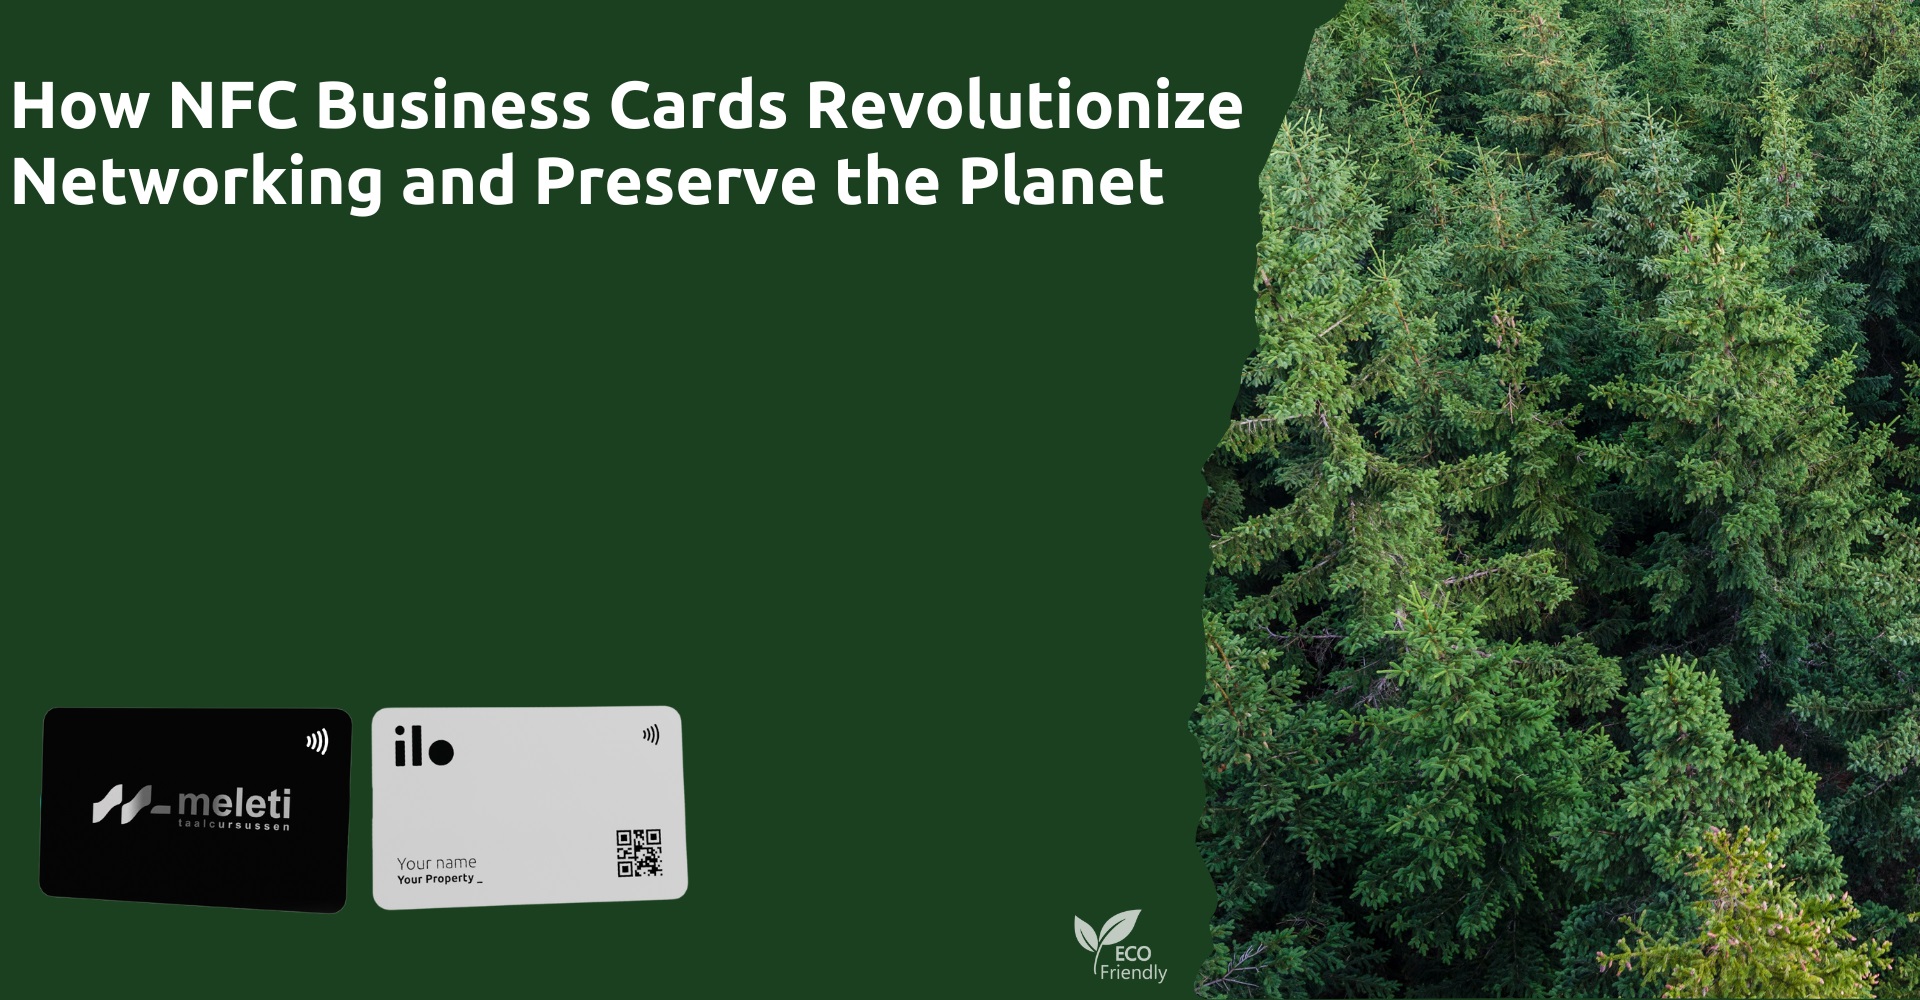 Πώς οι επαγγελματικές κάρτες NFC φέρνουν επανάσταση στη δικτύωση και βοηθούν τον πλανήτη.